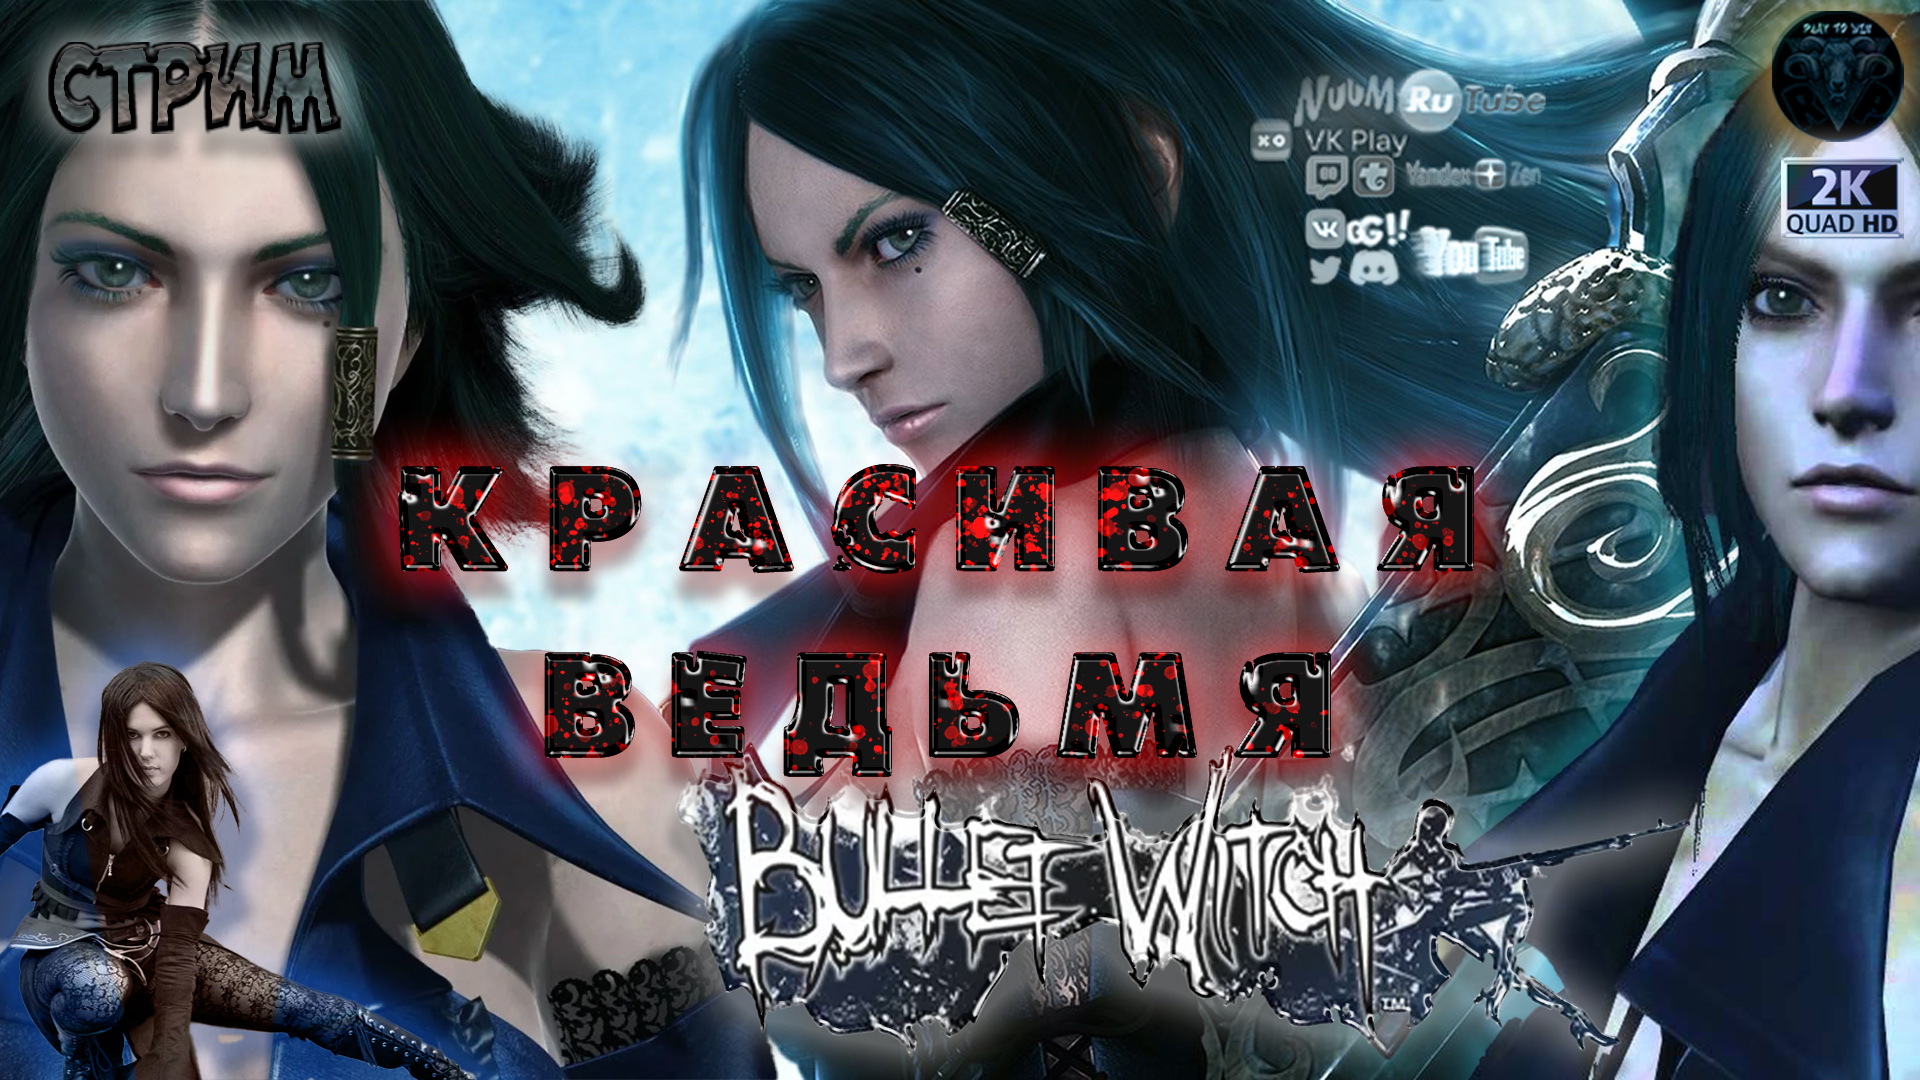 Bullet Witch (Ведьма-пуля) #2 Прохождение на русском #RitorPlay